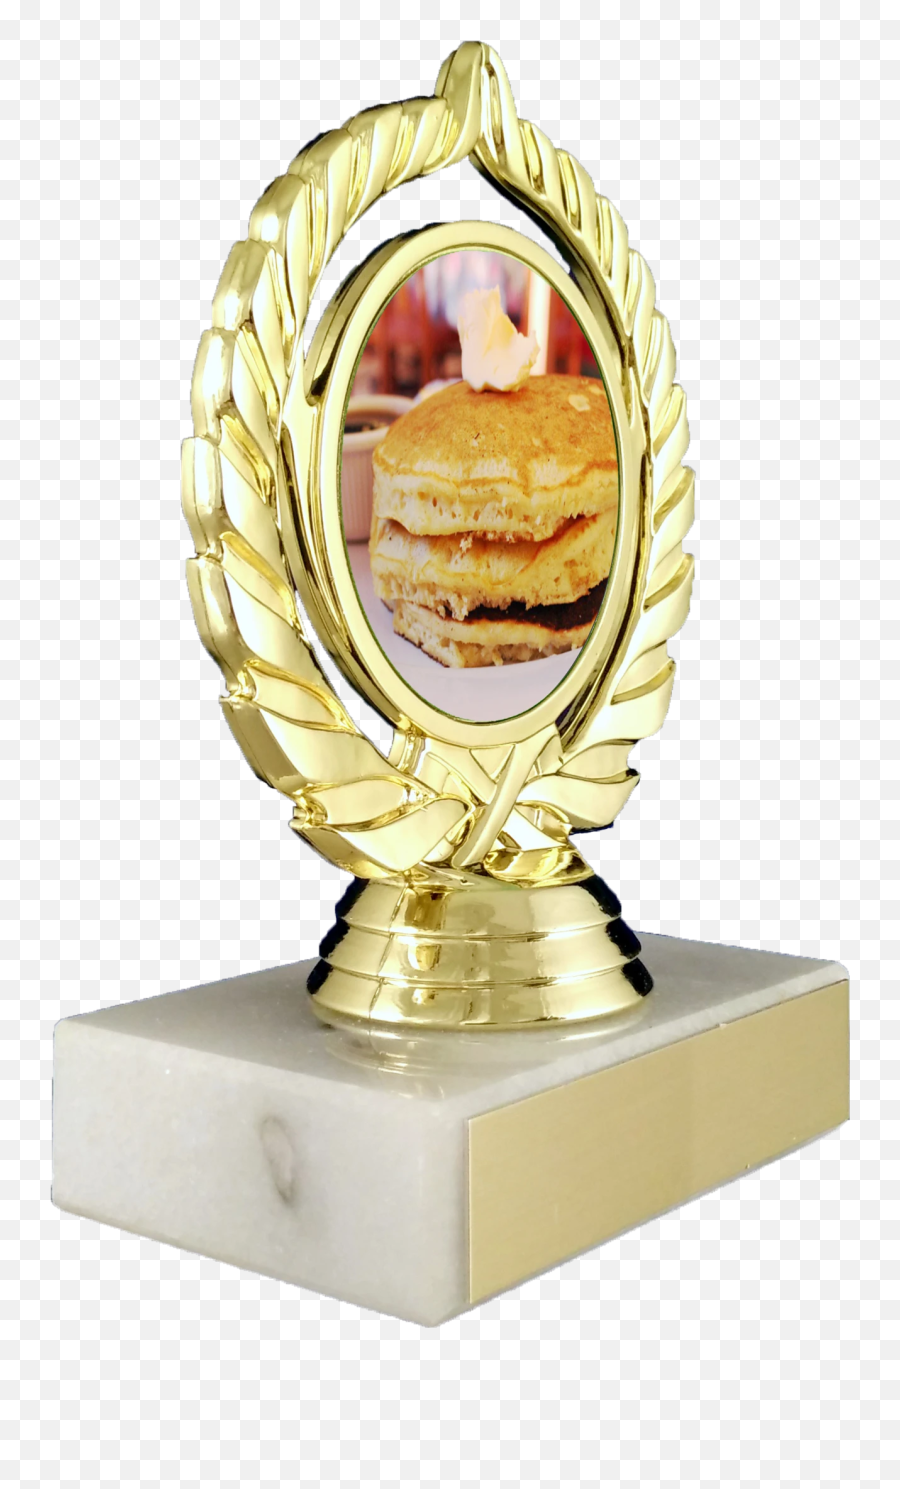 Pancake Trophy On Marble Base - Trophy Emoji,Pancake Emoji